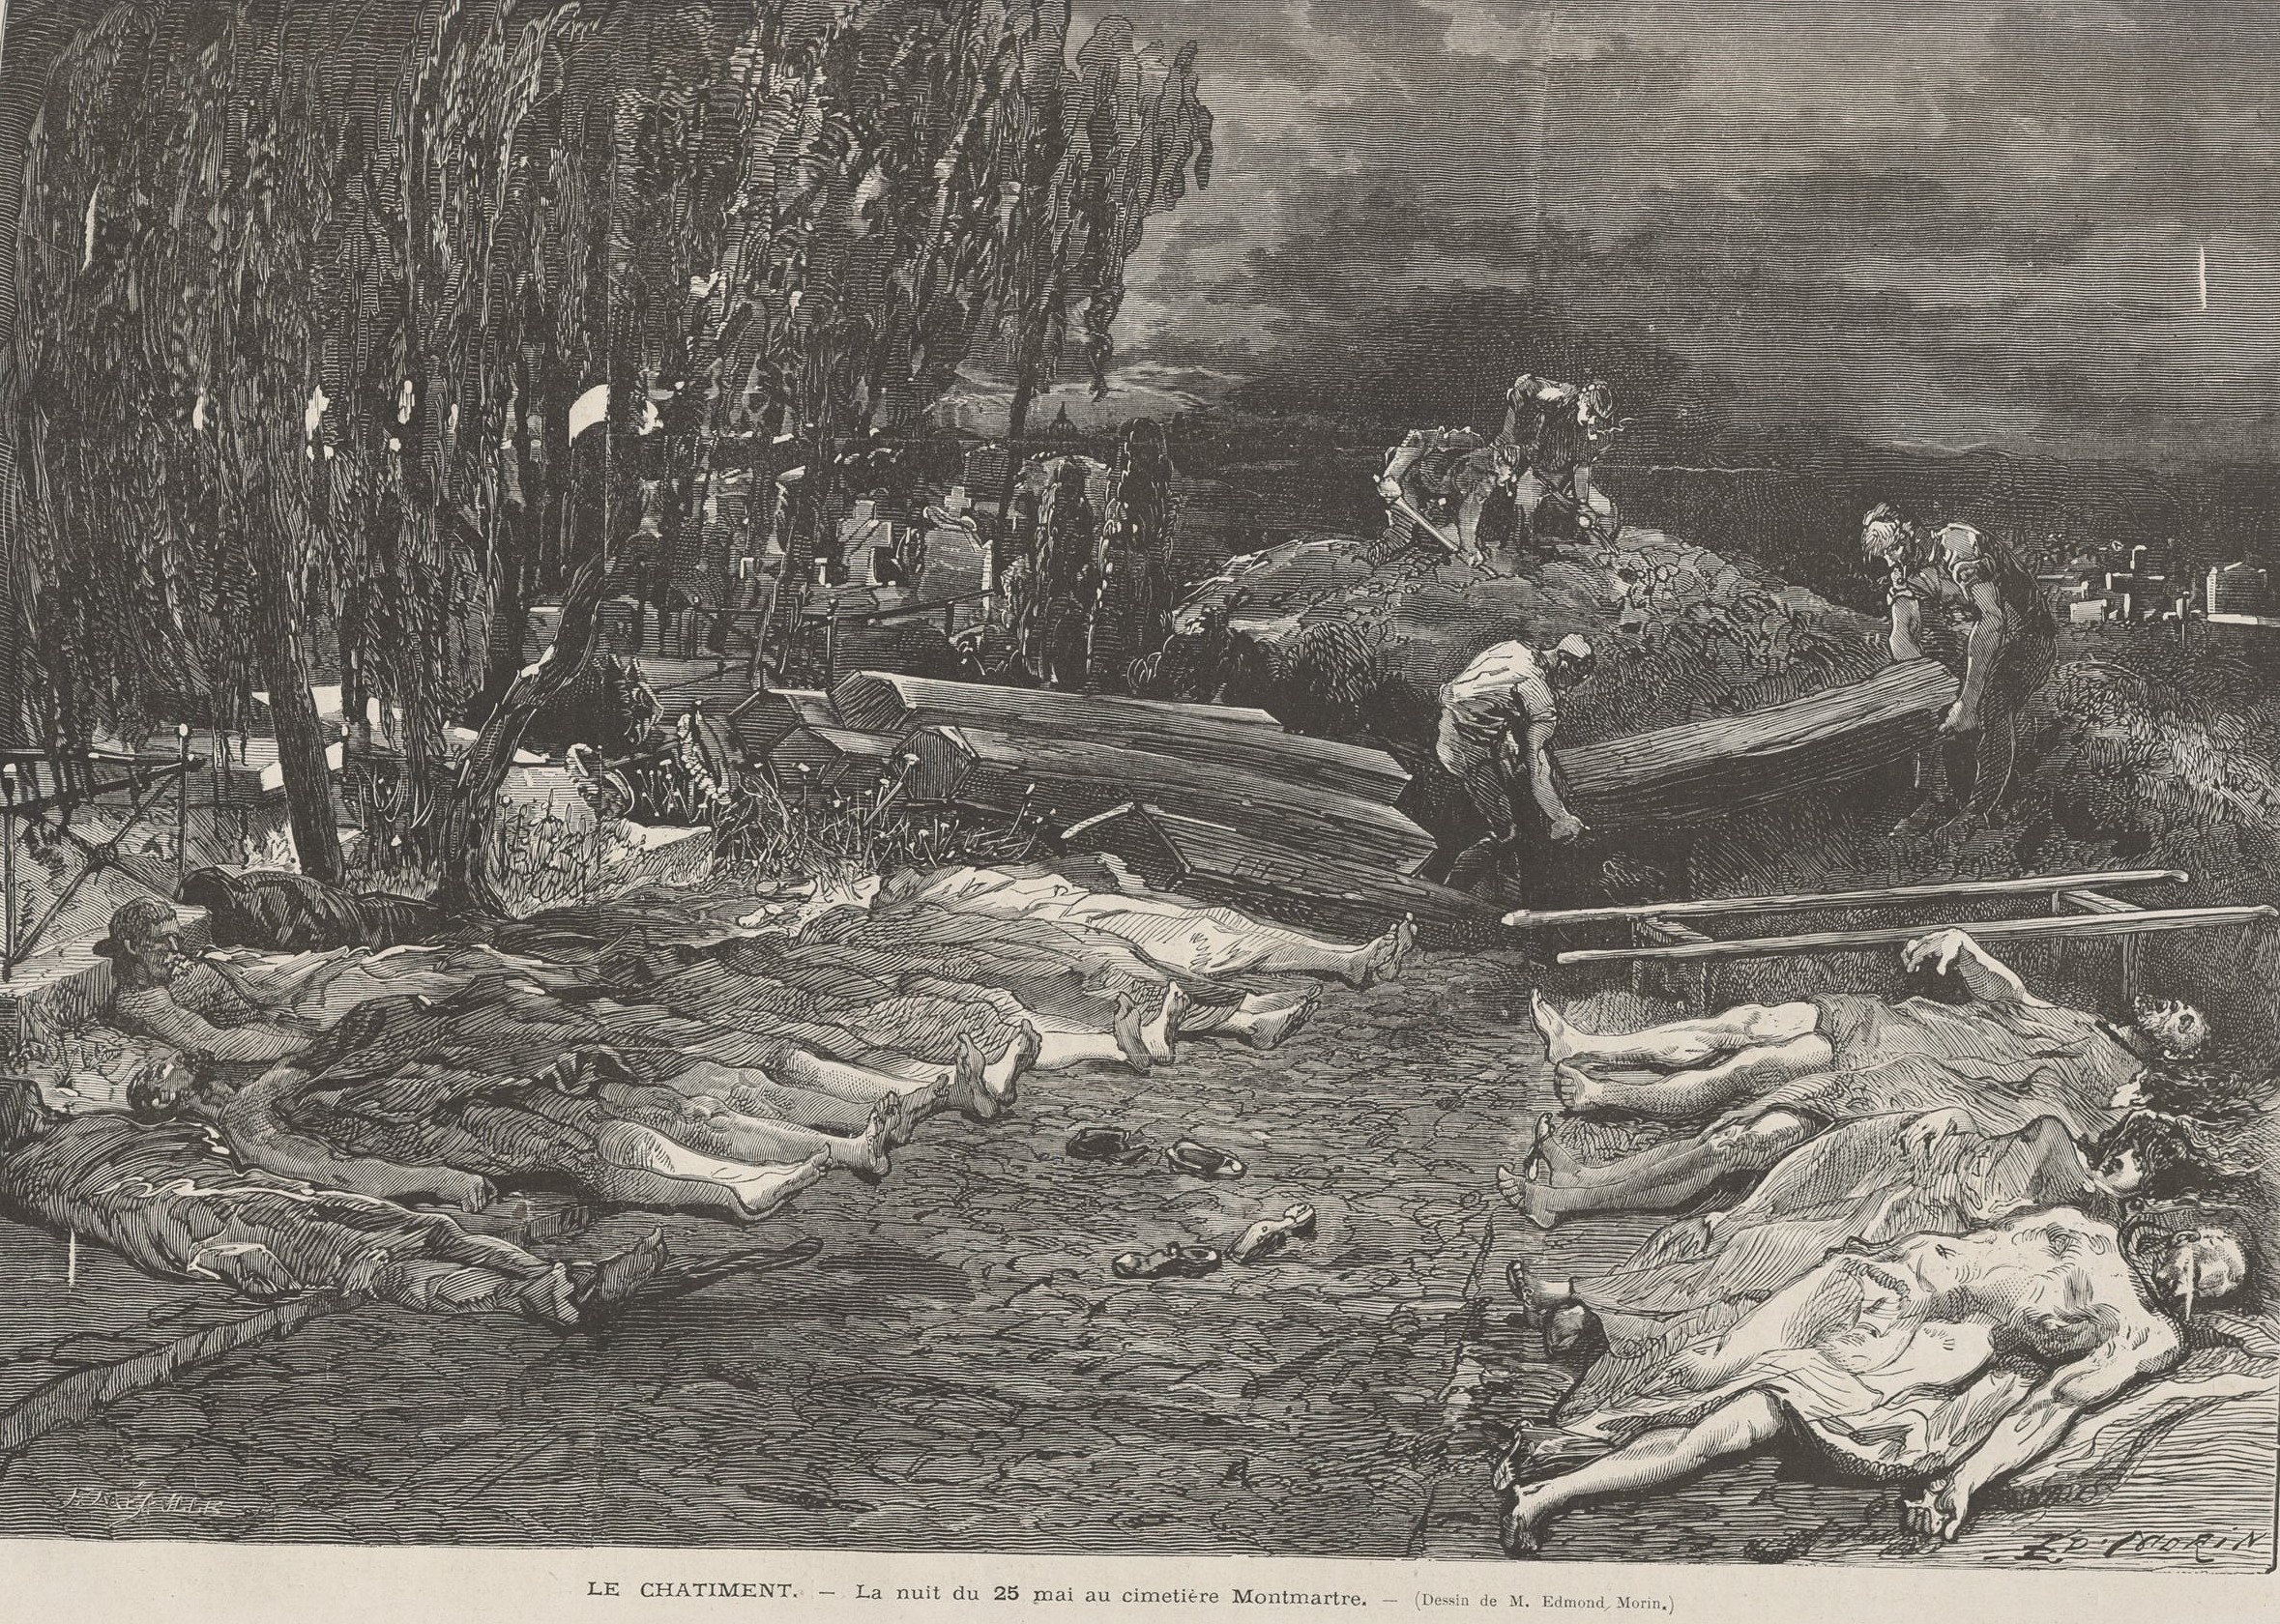  « Le Châtiment – La nuit du 25 mai au cimetière Montmartre » Edmond Morin (Le Monde illustré du 15 juillet 1871)